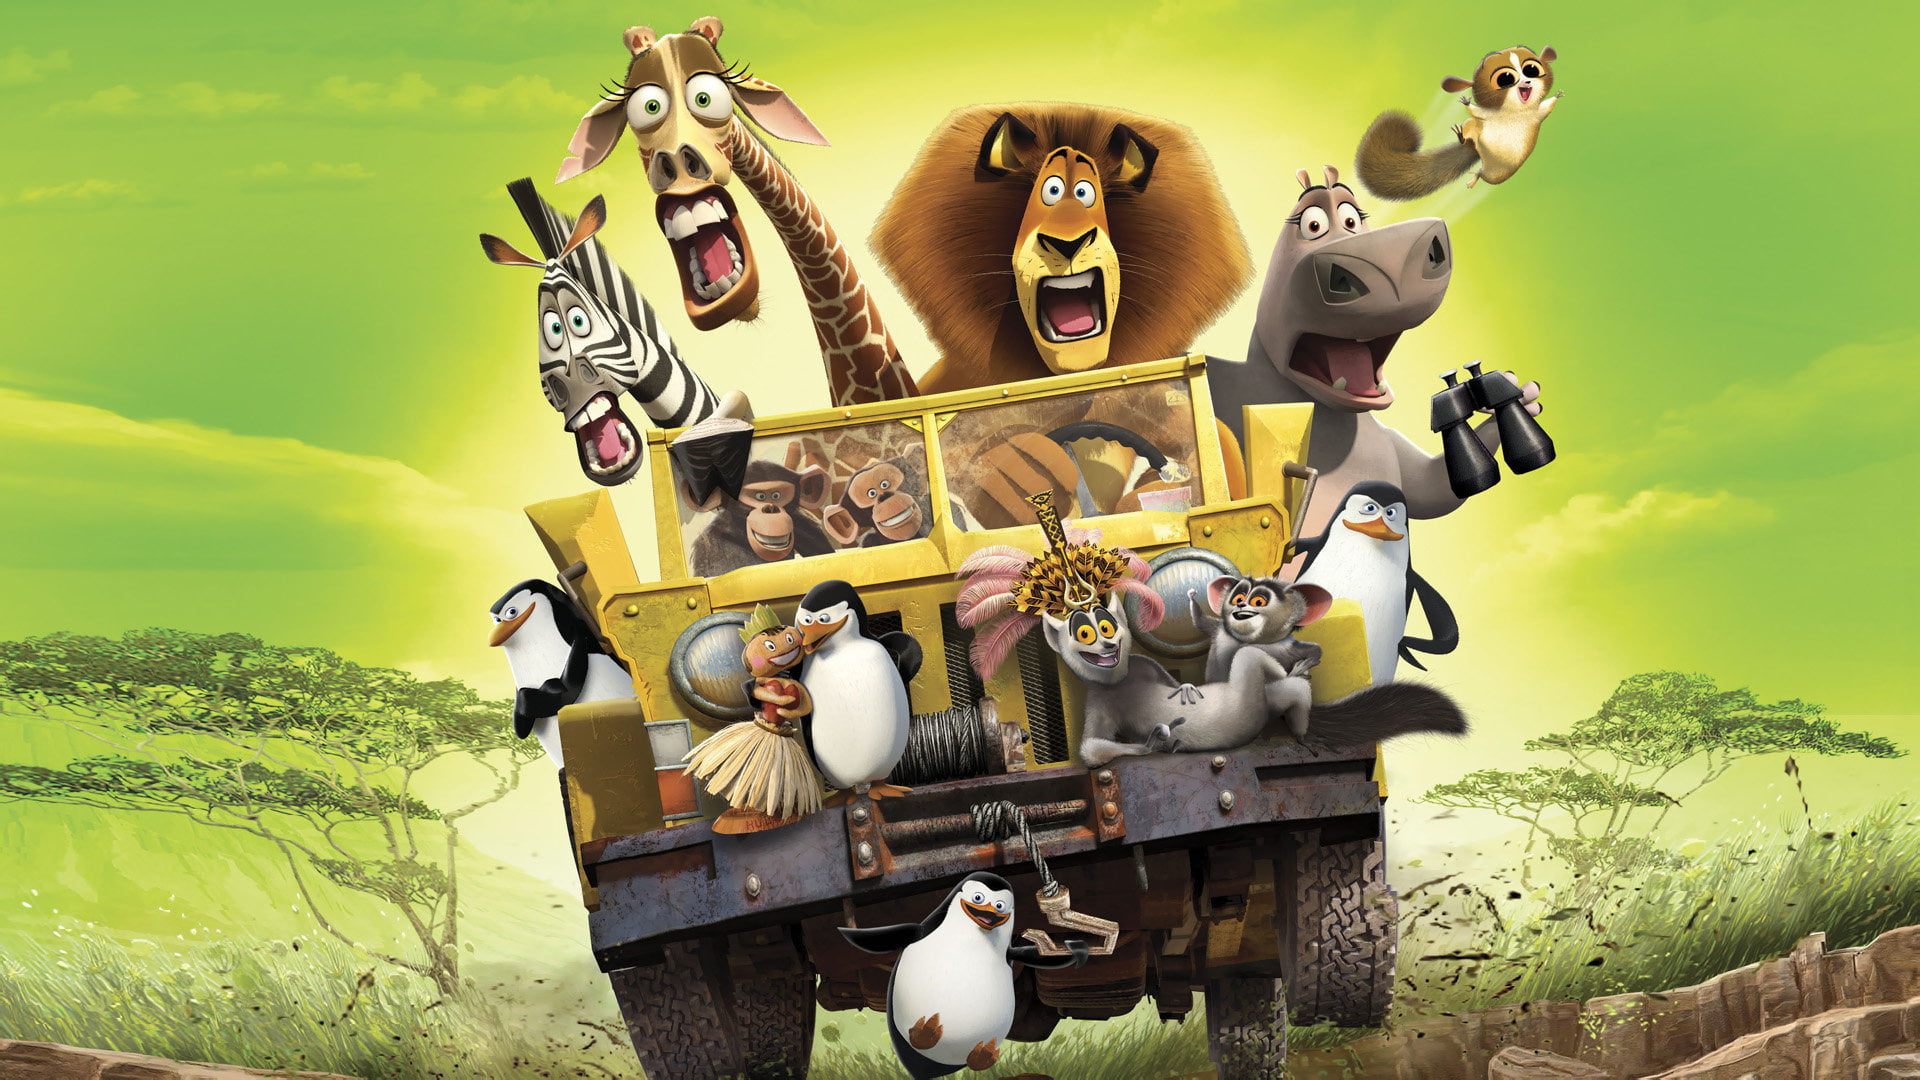 Madagascar movie illustration, mood, cartoon, Savannah, animal